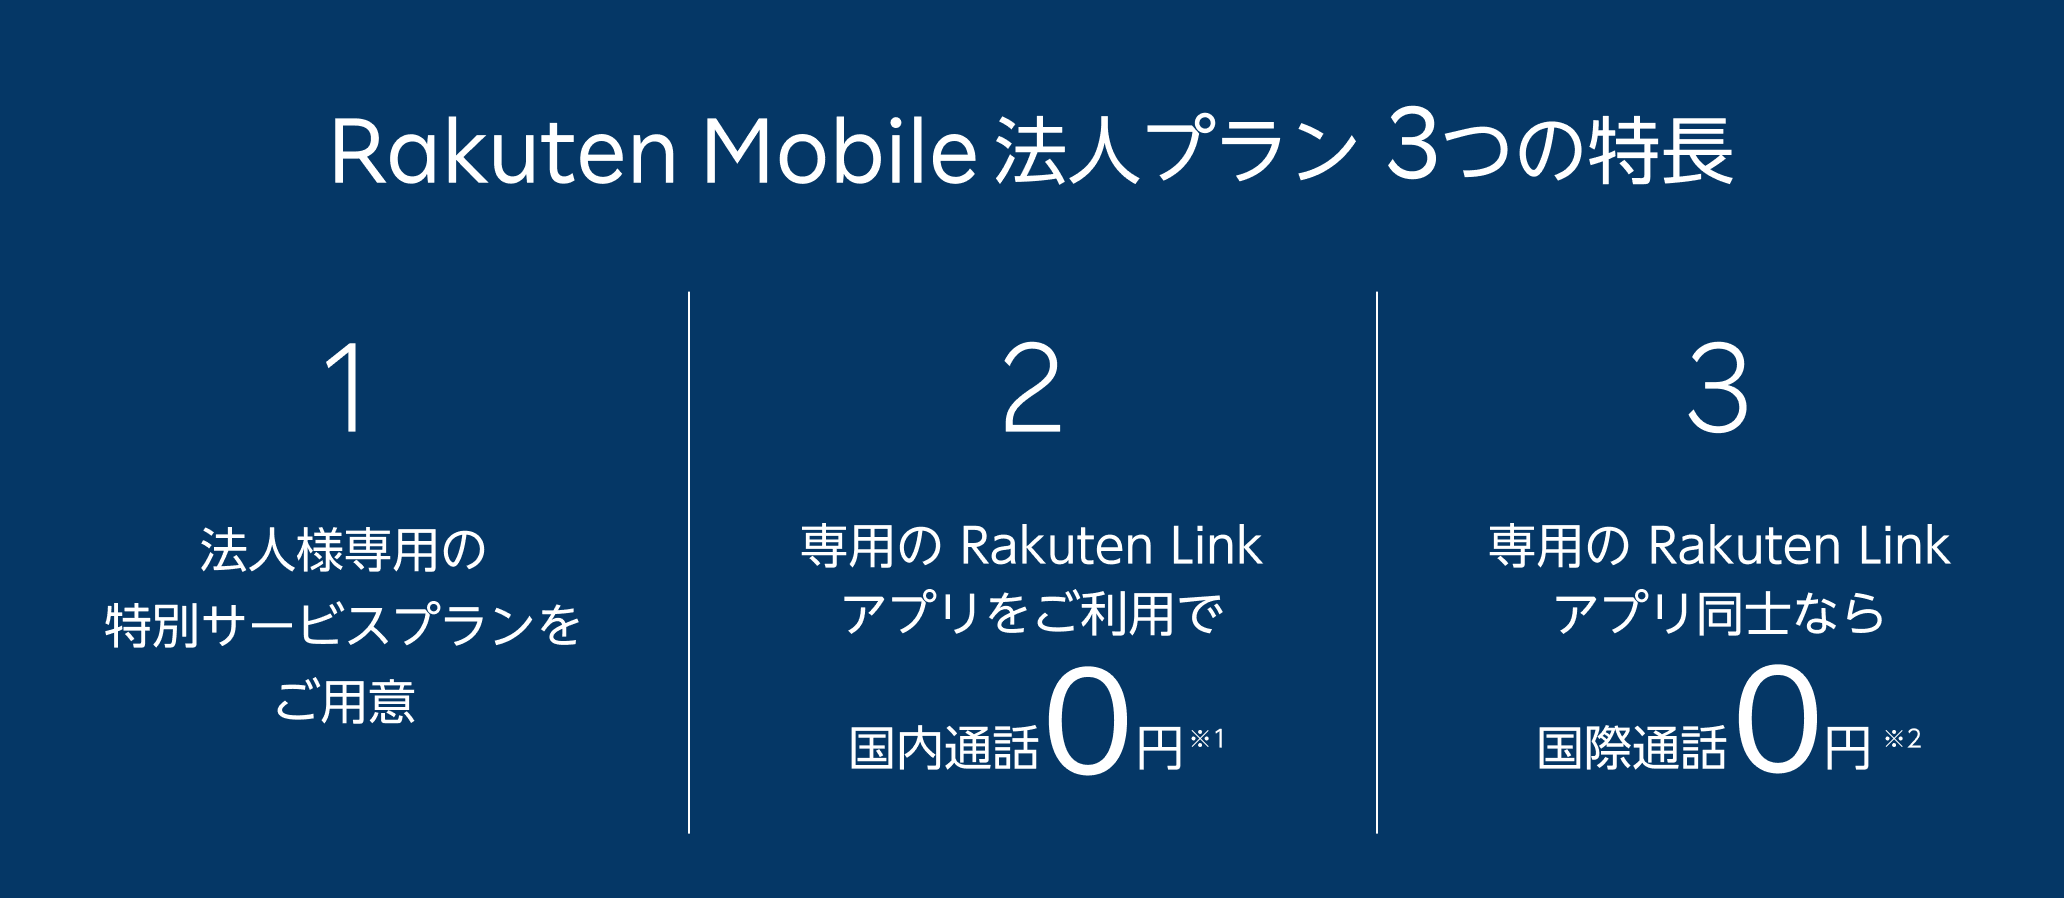 Rakuten Mobile 法人プラン 3つの特長 1 法人様専用の特別サービスプランをご用意 2 専用のRakuten Linkアプリをご利用で国内通話0円※1 3 専用のRakuten Linkアプリ同士なら国際通話0円※2